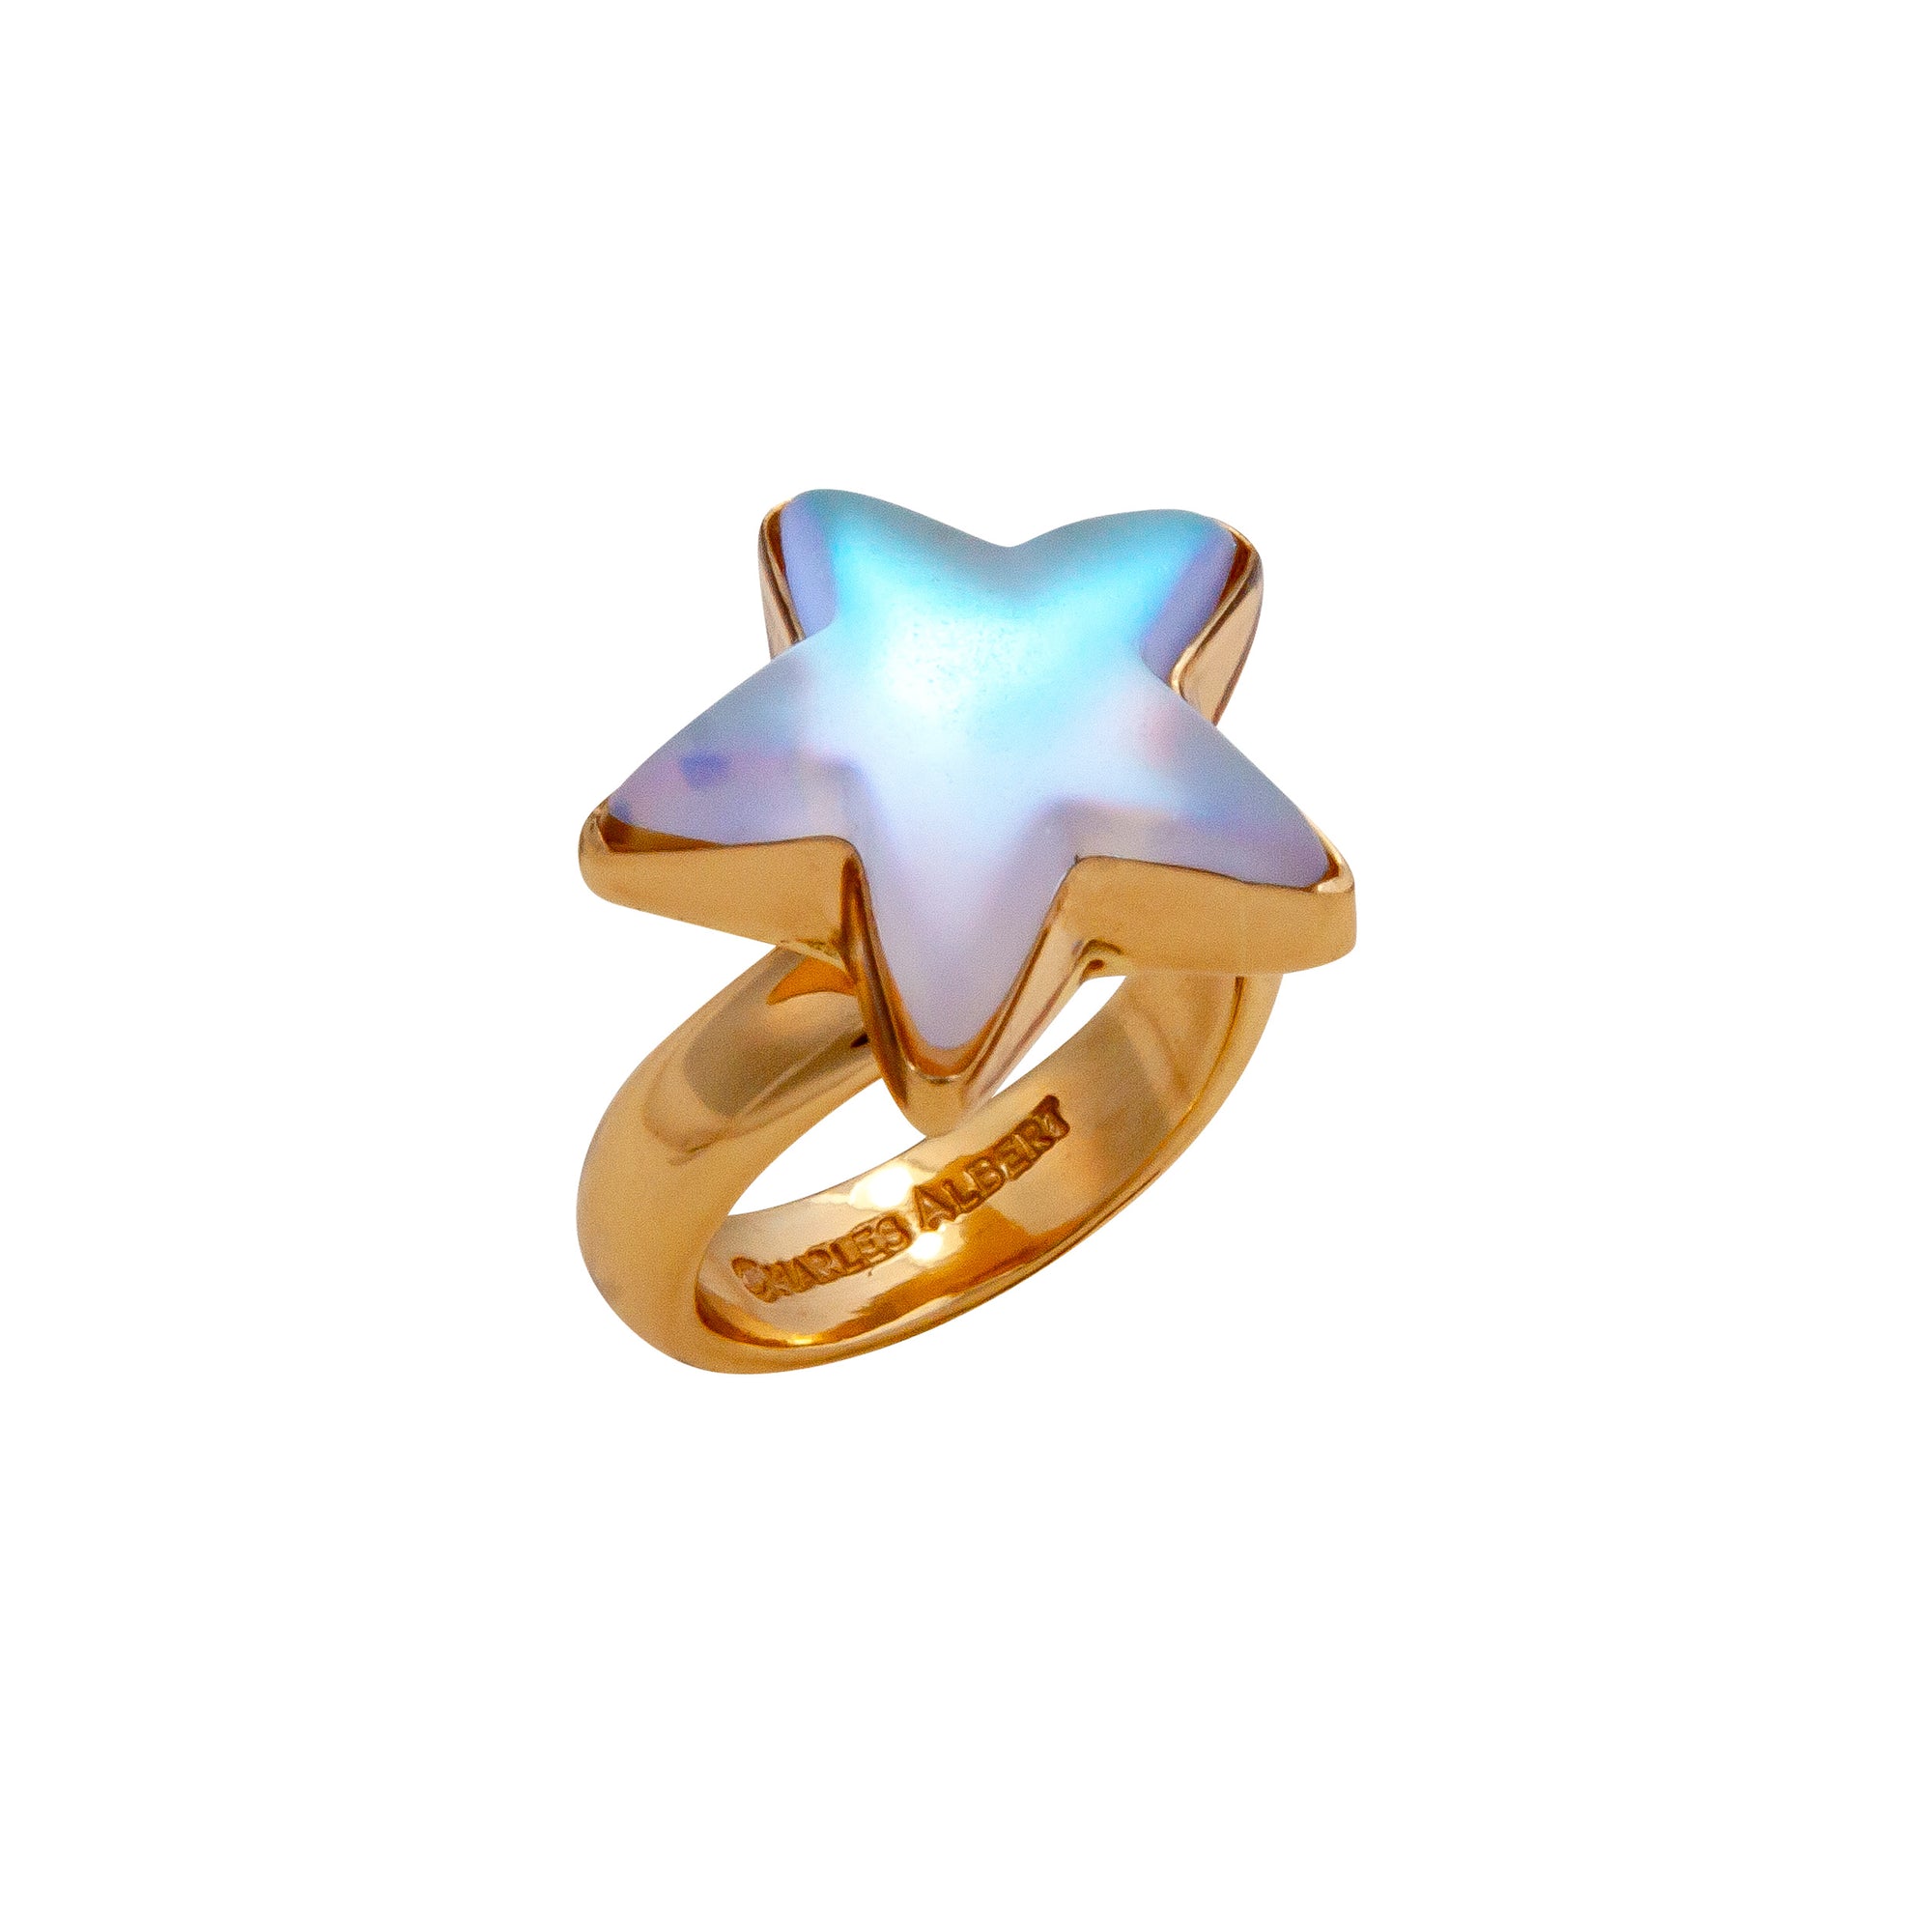 Alchemia Luminite Star Adjustable Ring | Charles Albert Jewelry